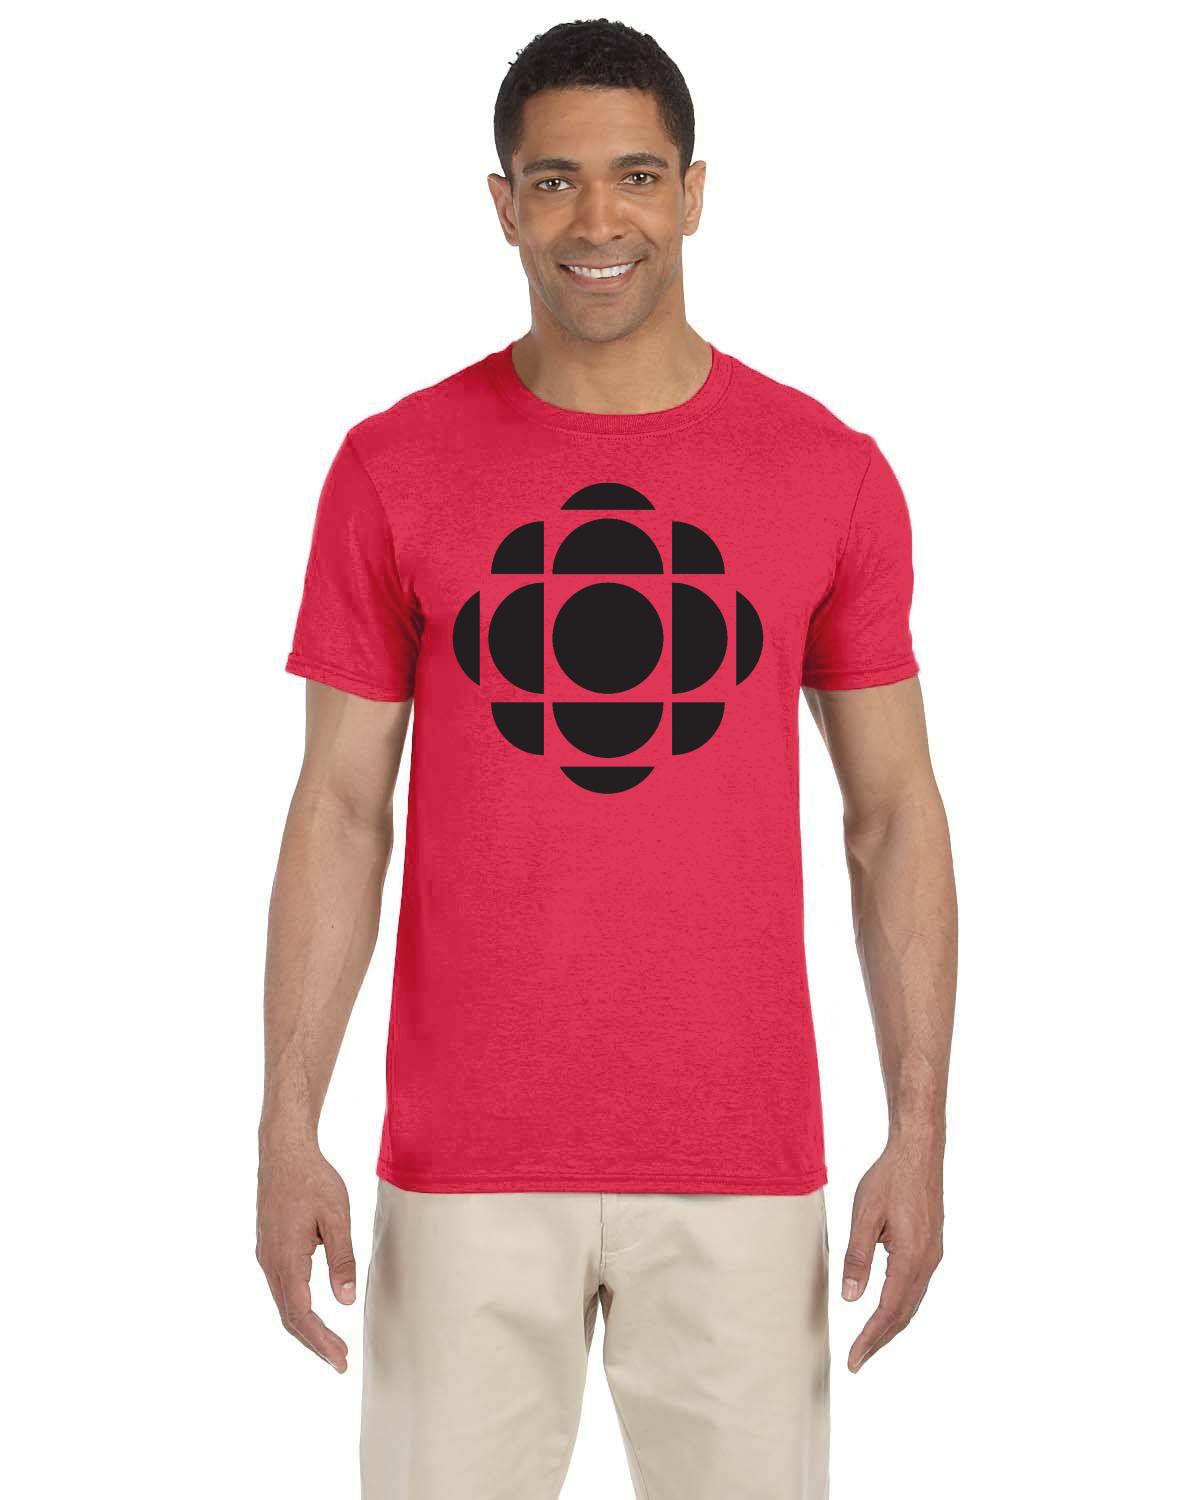 CBC Gem Black Logo T-Shirt, Canadian Nostalgia, Officially Licensed CBC Apparel